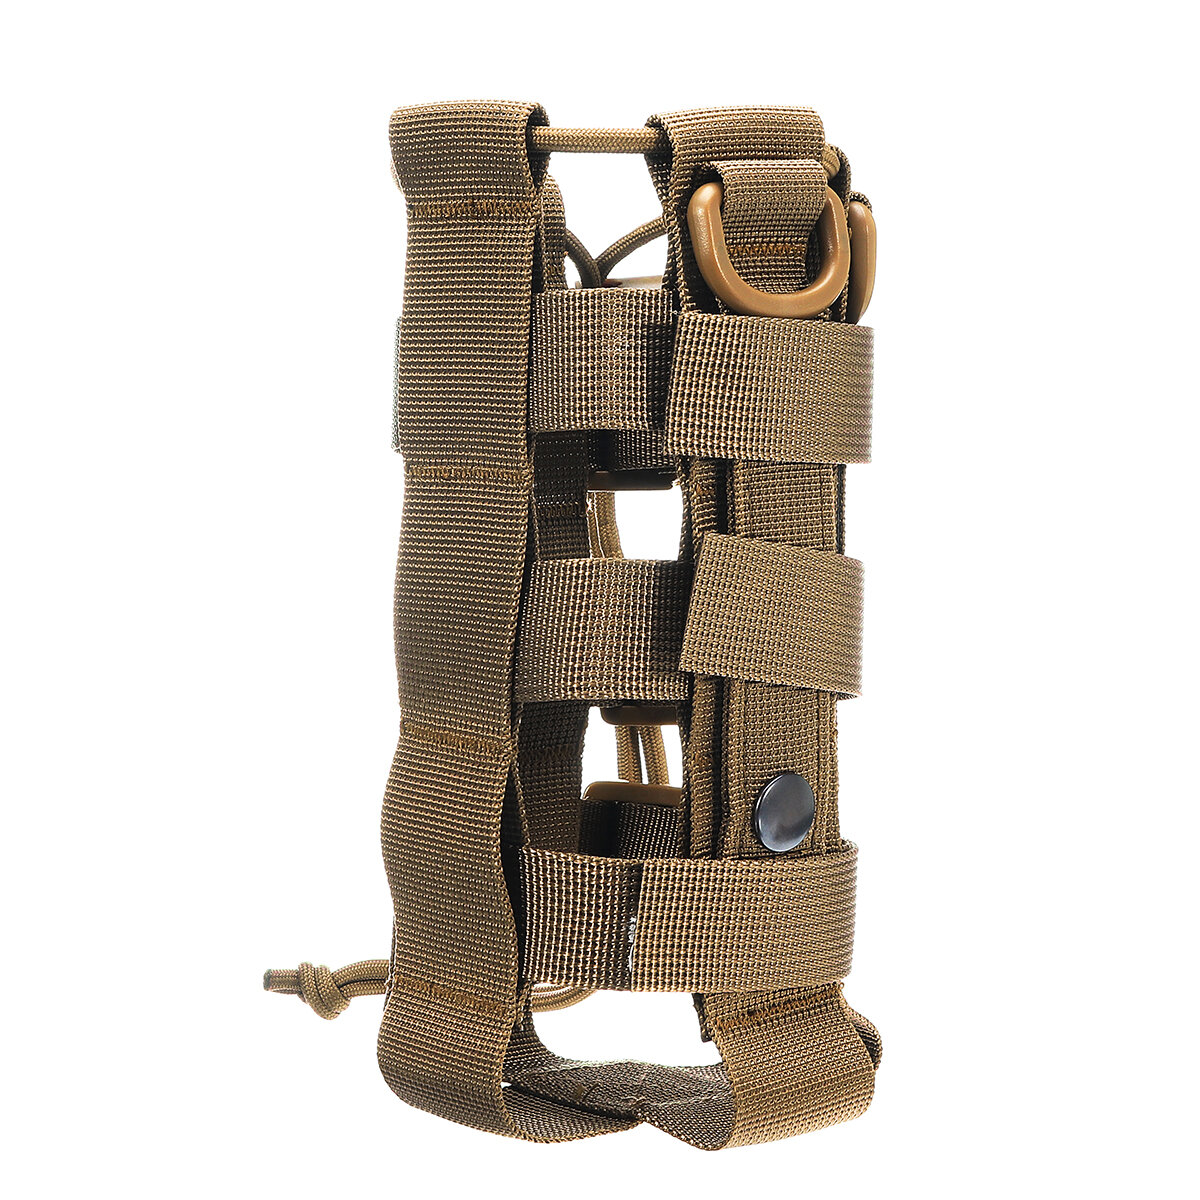 حقيبة تكتيكية خارجية للتخييم العسكري ، مع جيب لزجاجة الماء وحامل للغلاية